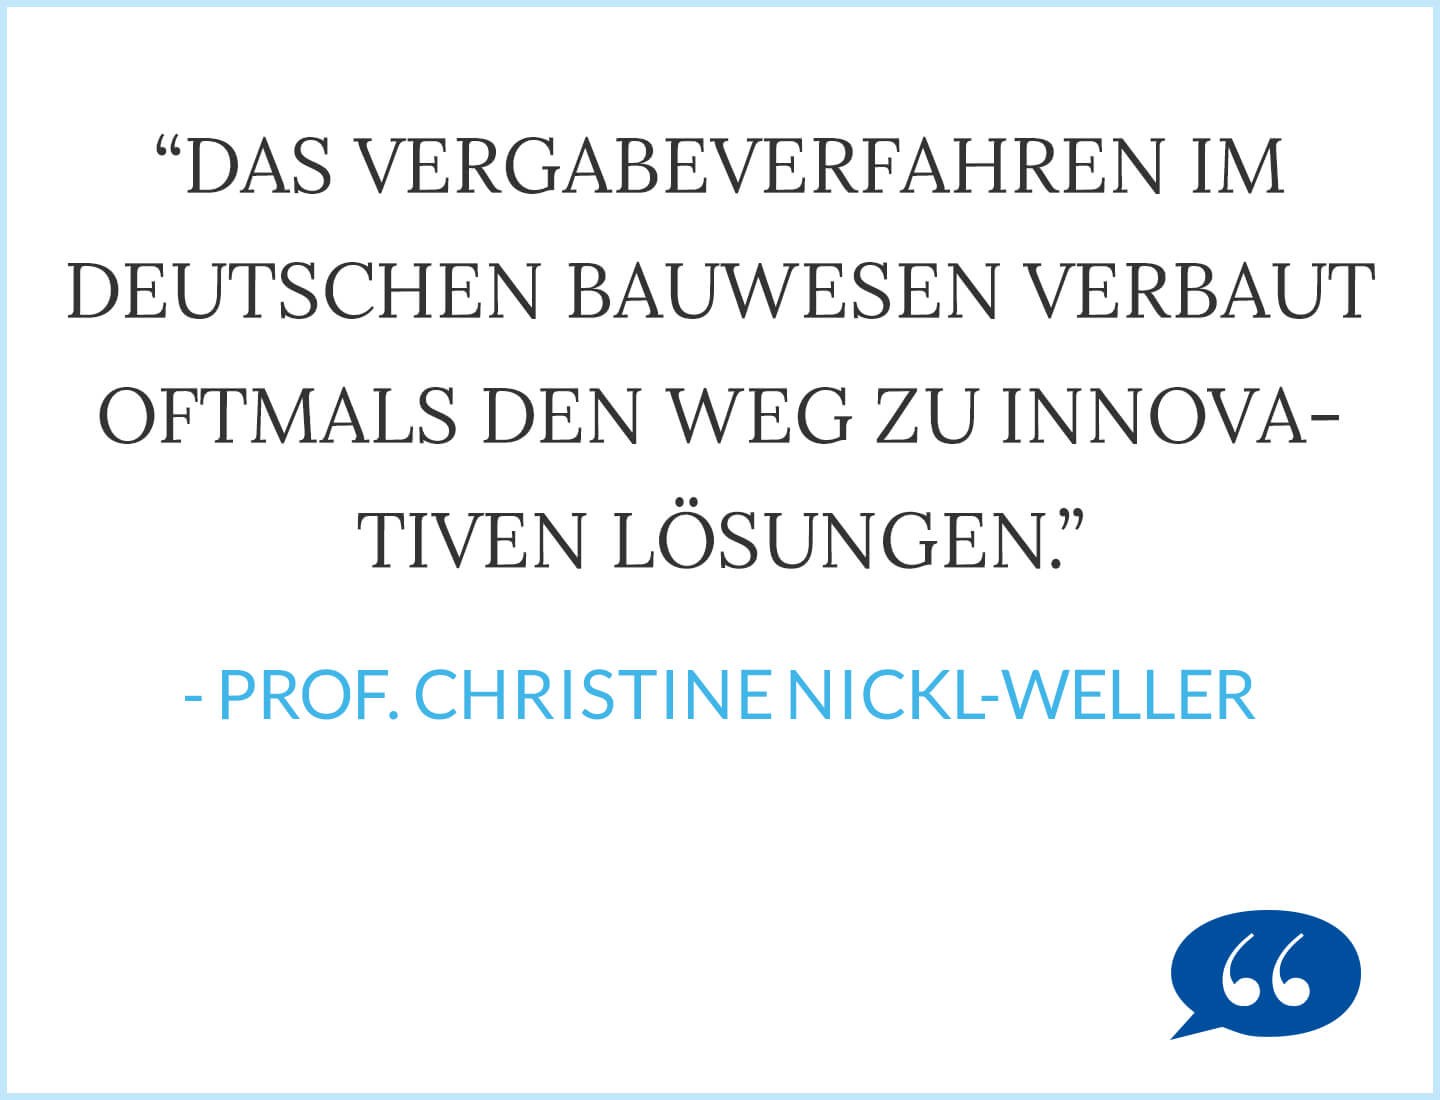 Das Vergabeverfahren im deutschen Bauwesen verbaut oftmals den Weg zu innovativen Lösungen. Prof. Christine Nickl-Weller